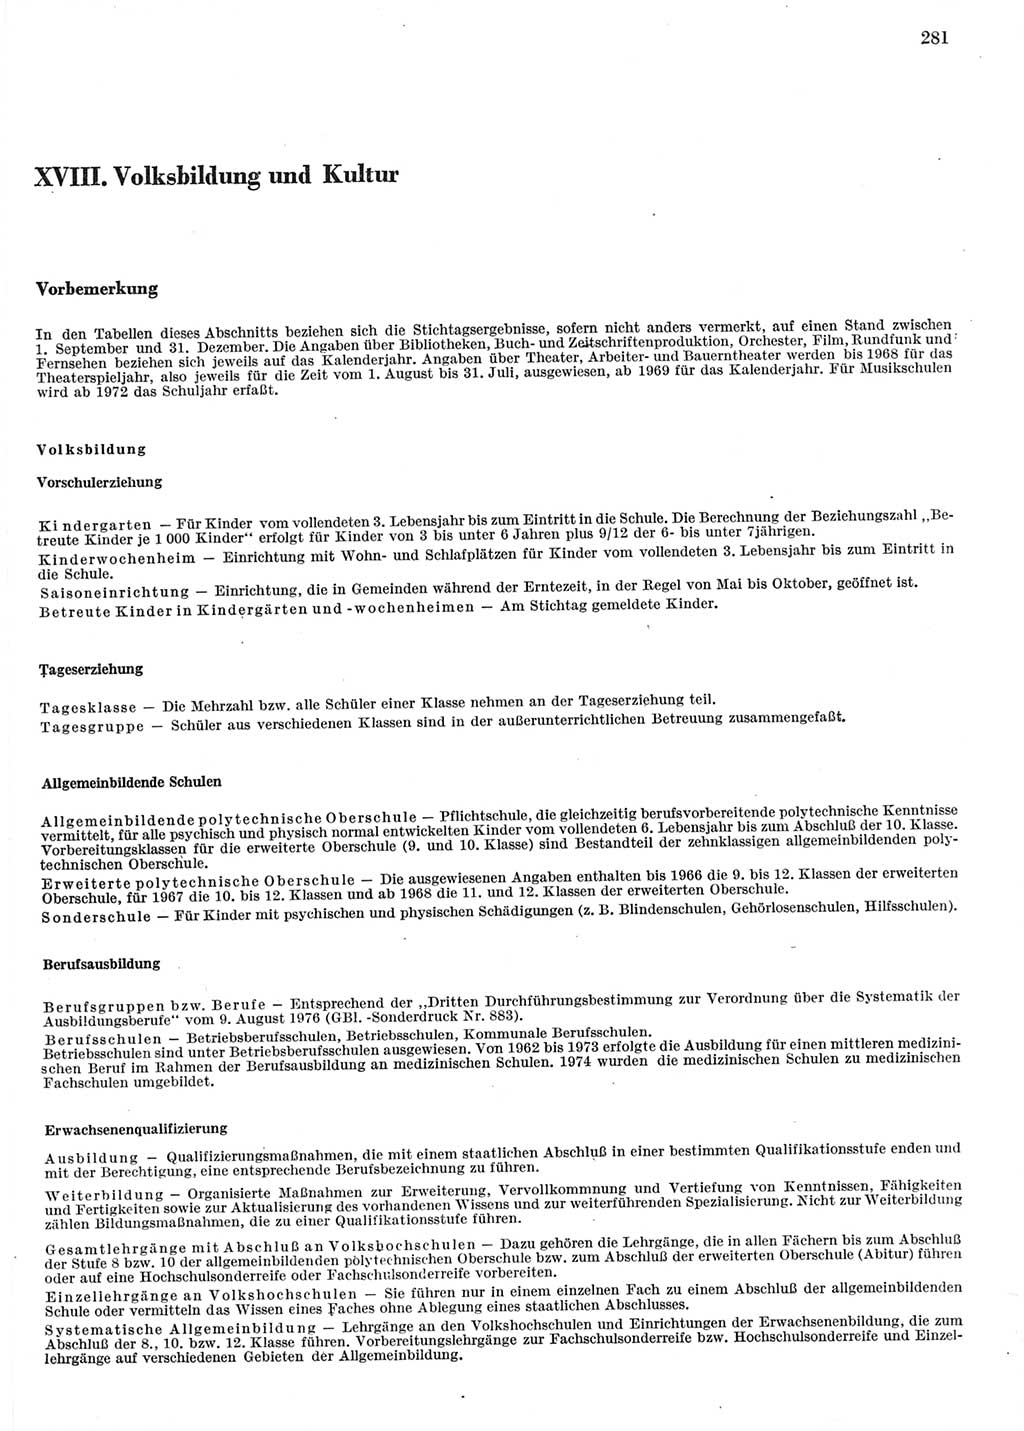 Statistisches Jahrbuch der Deutschen Demokratischen Republik (DDR) 1978, Seite 281 (Stat. Jb. DDR 1978, S. 281)